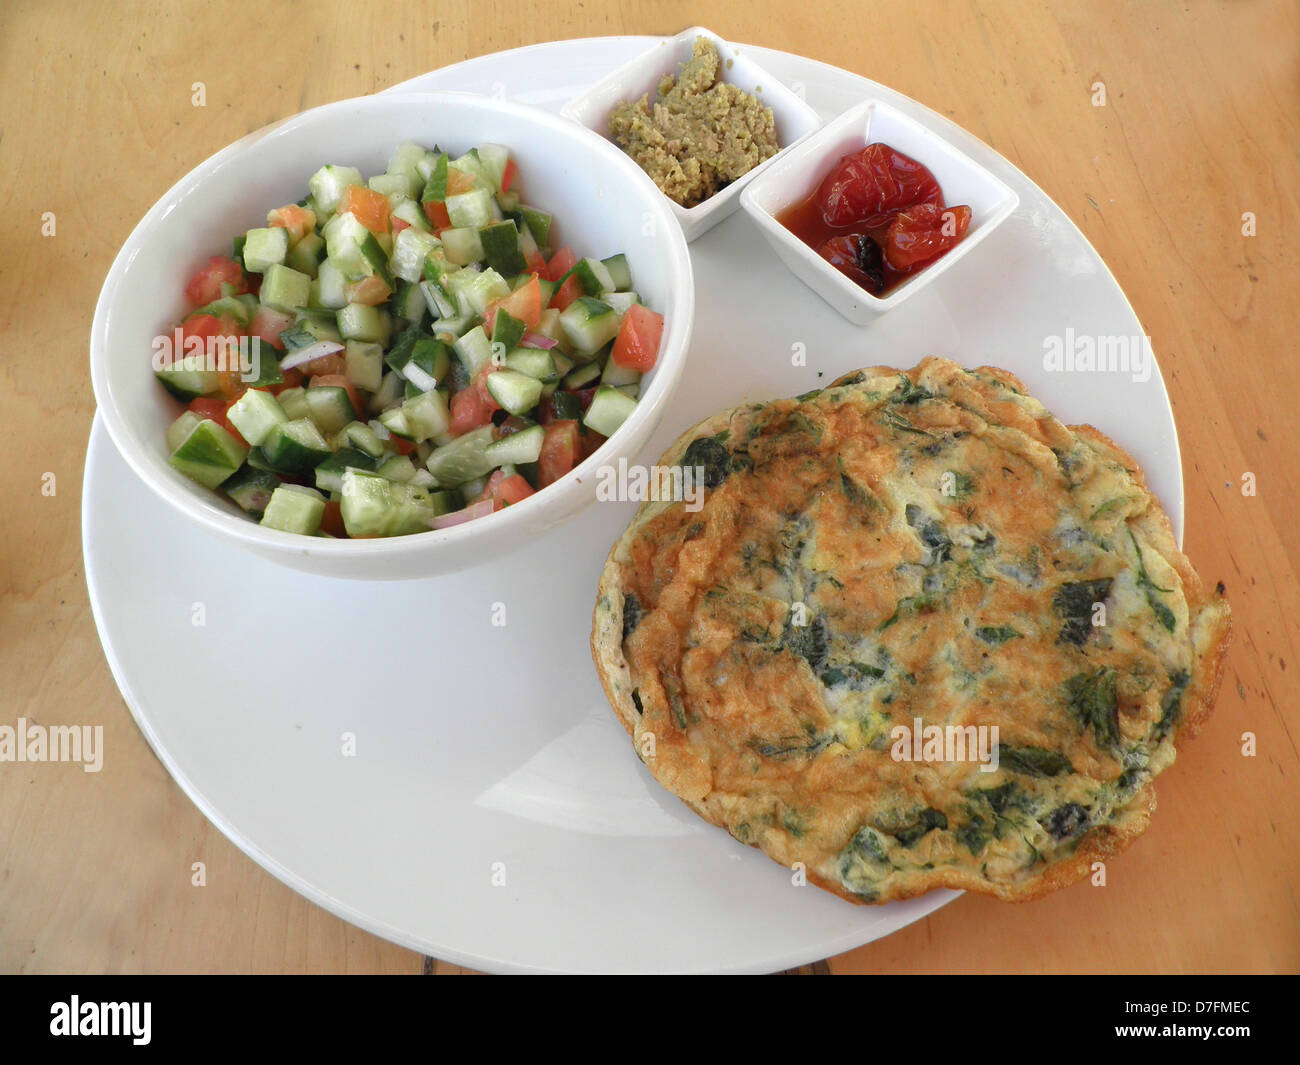 La colazione israeliana era composta di frittata, insalata di verdure e diffusione (Incolla) Foto Stock